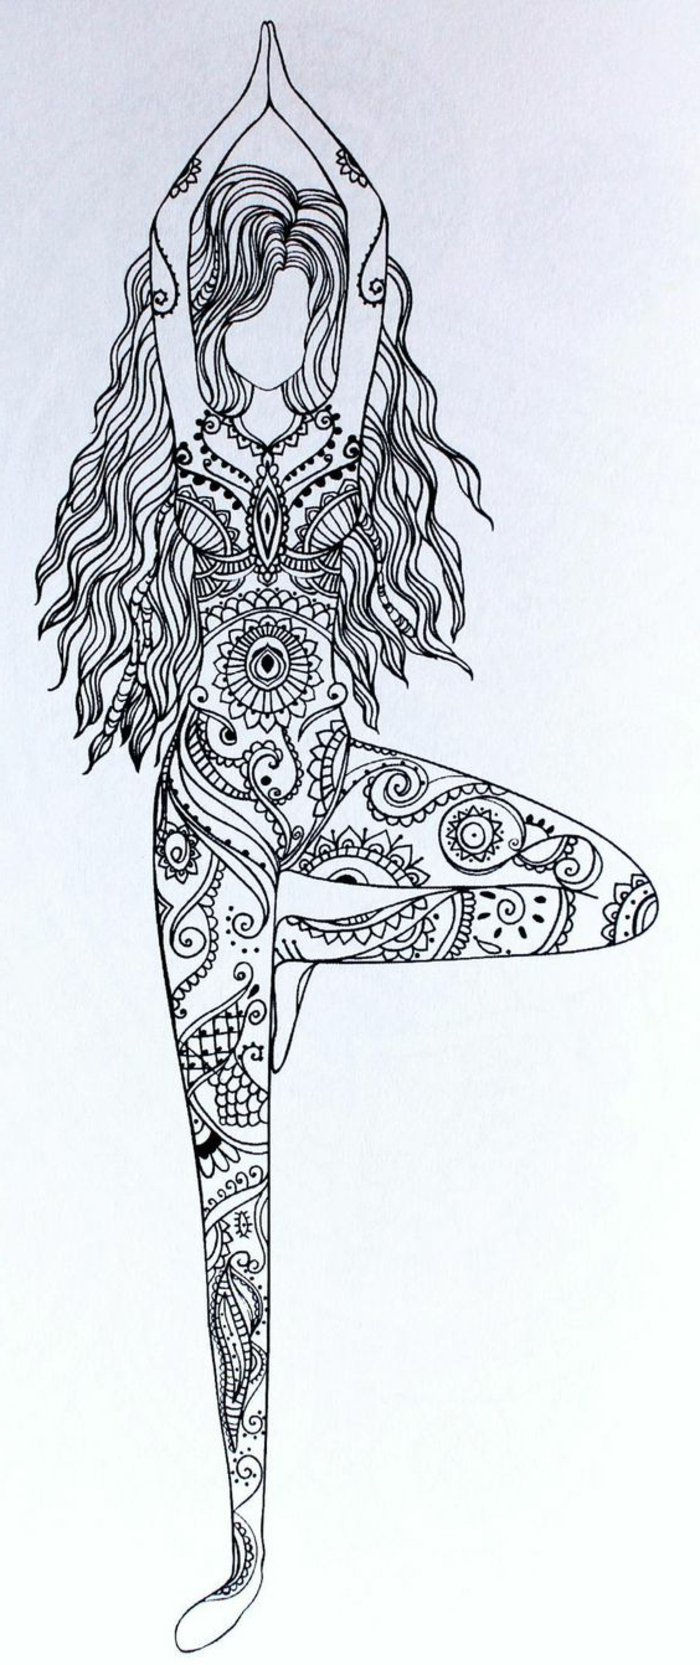 en mandala ritning av en tjej som övar yoga, tjej med långt vågigt hår, mini mandalas